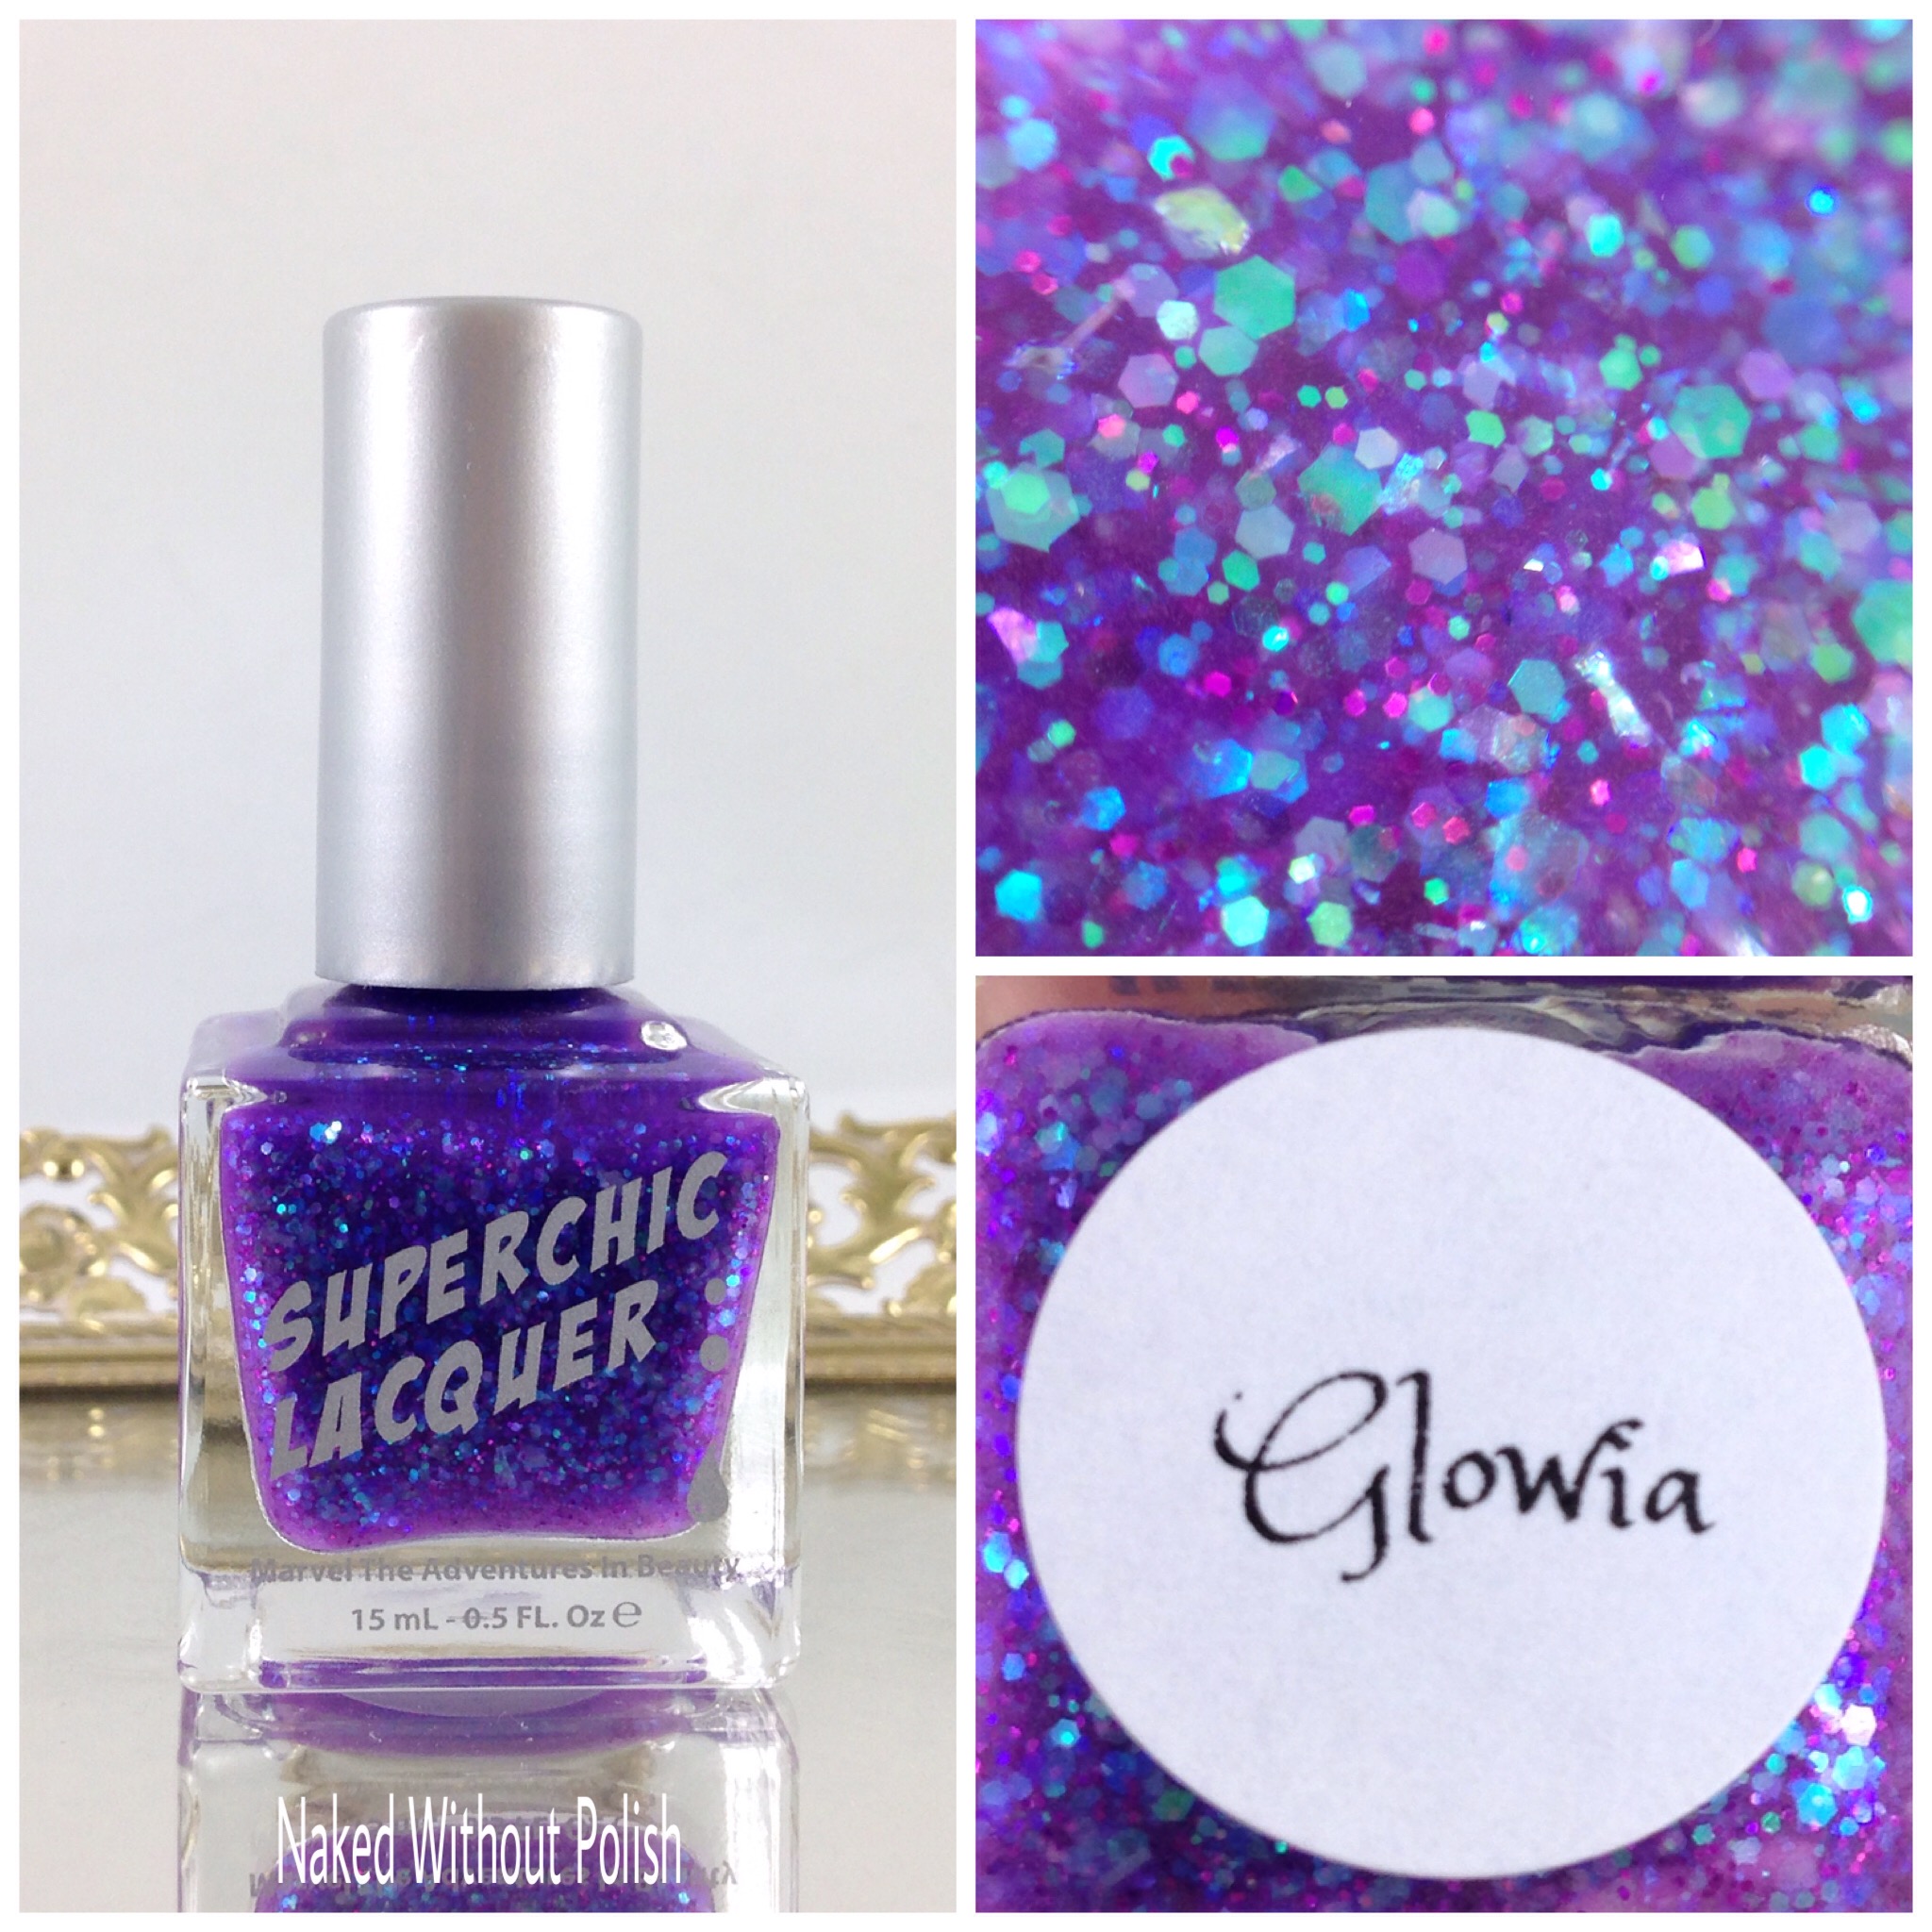 SuperChic-Lacquer-Glowia-1